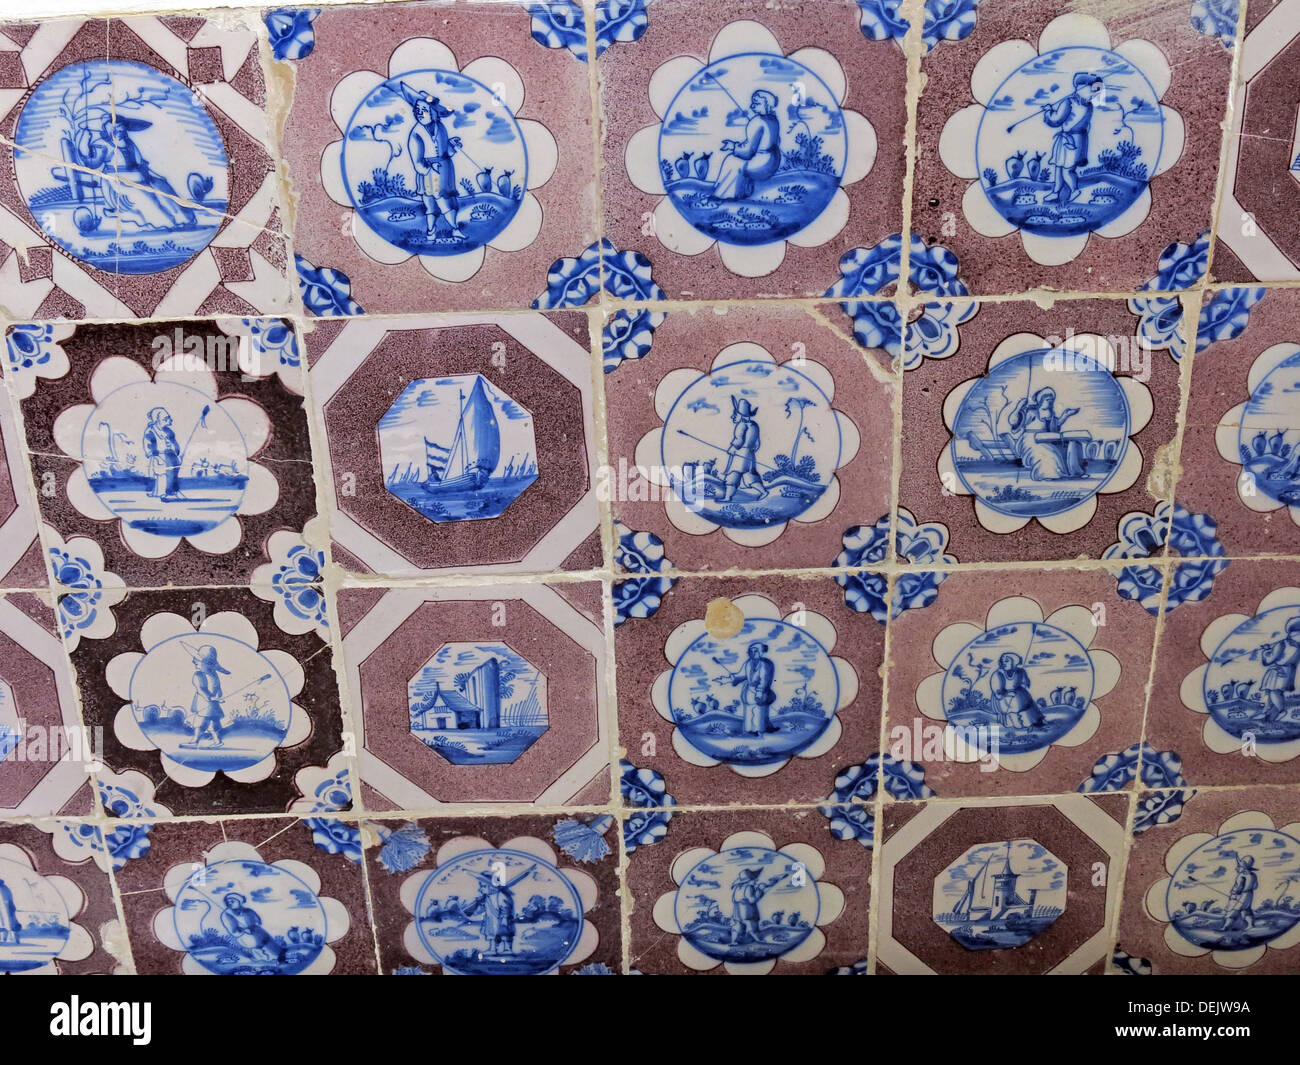 Les carreaux de céramique dans la région de Brown & Dutch bleu,Barrington Court,ilminster Somerset,Angleterre,,UK,NT Banque D'Images